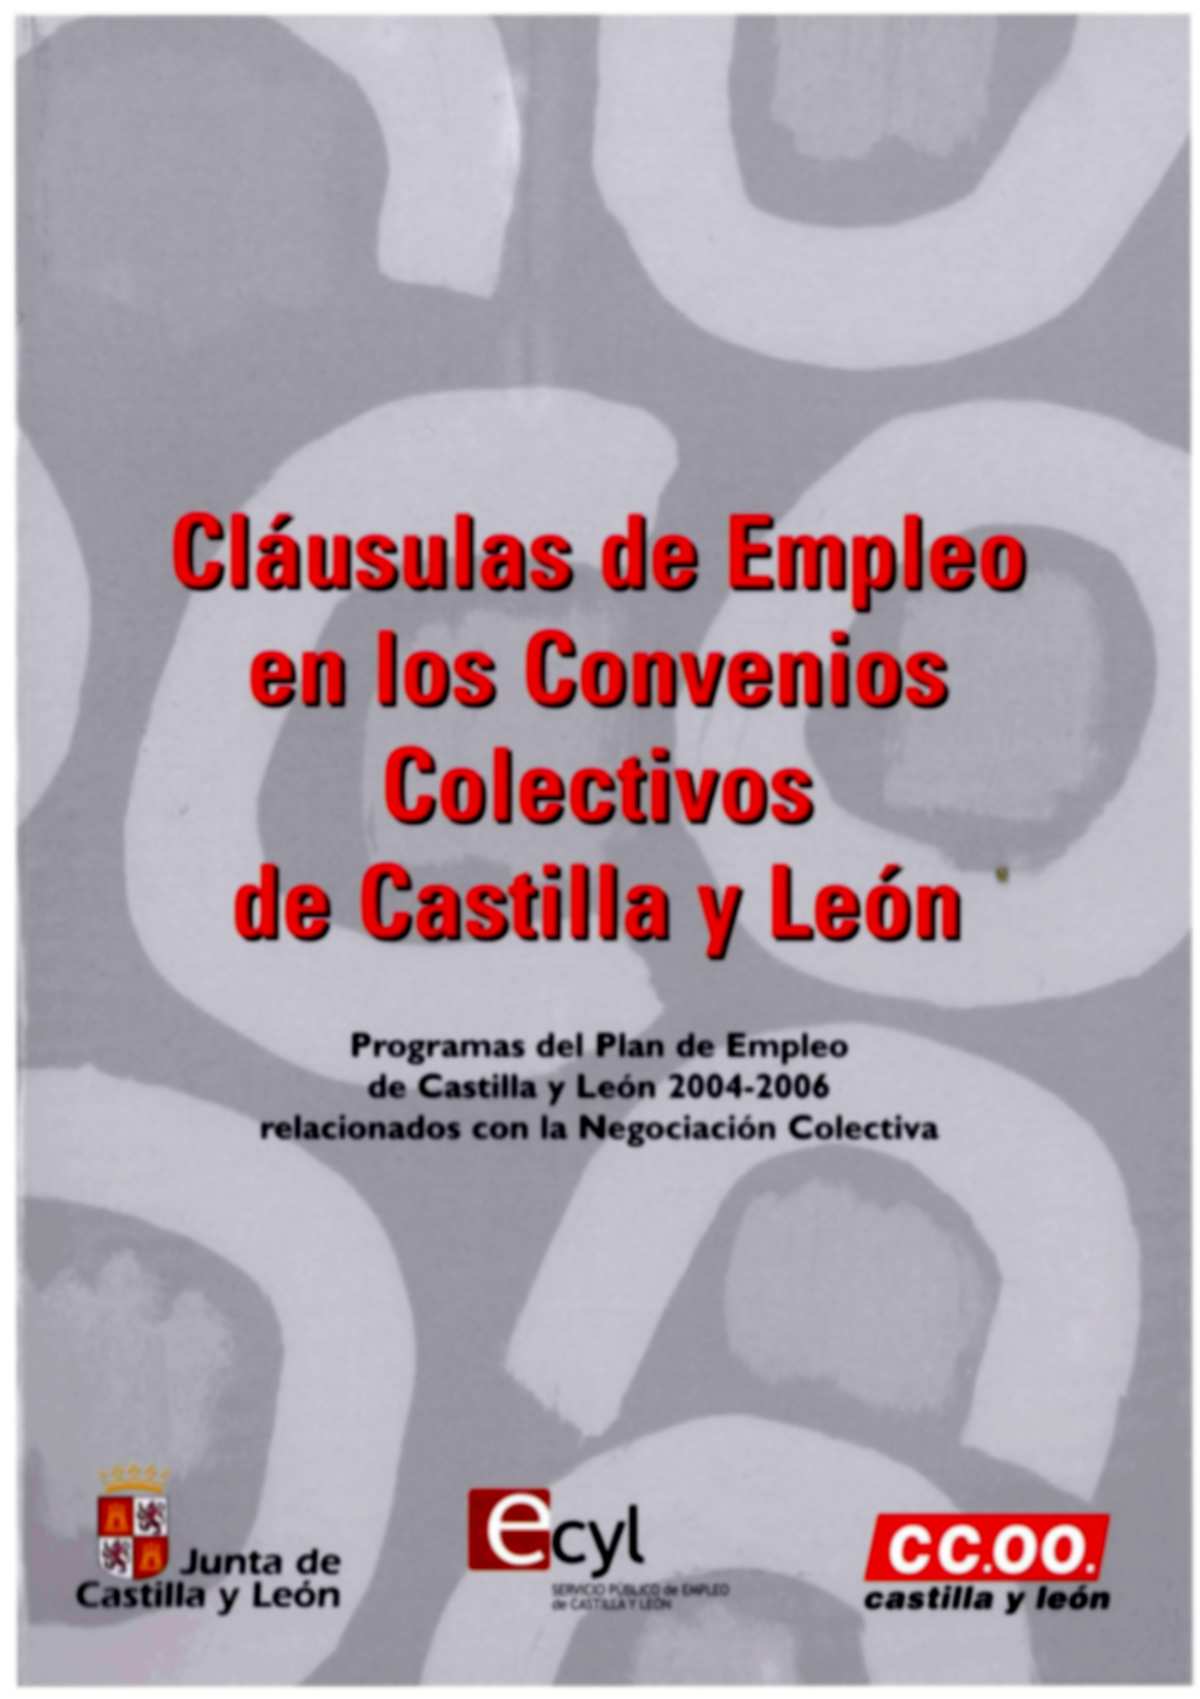 Esta Publicación analiza las clausulas de empleo en los Convenios Colectivos de Castilla y León, con el fin de identificar y valorar los aspectos relativos a la mejora de las condiciones de la contrat